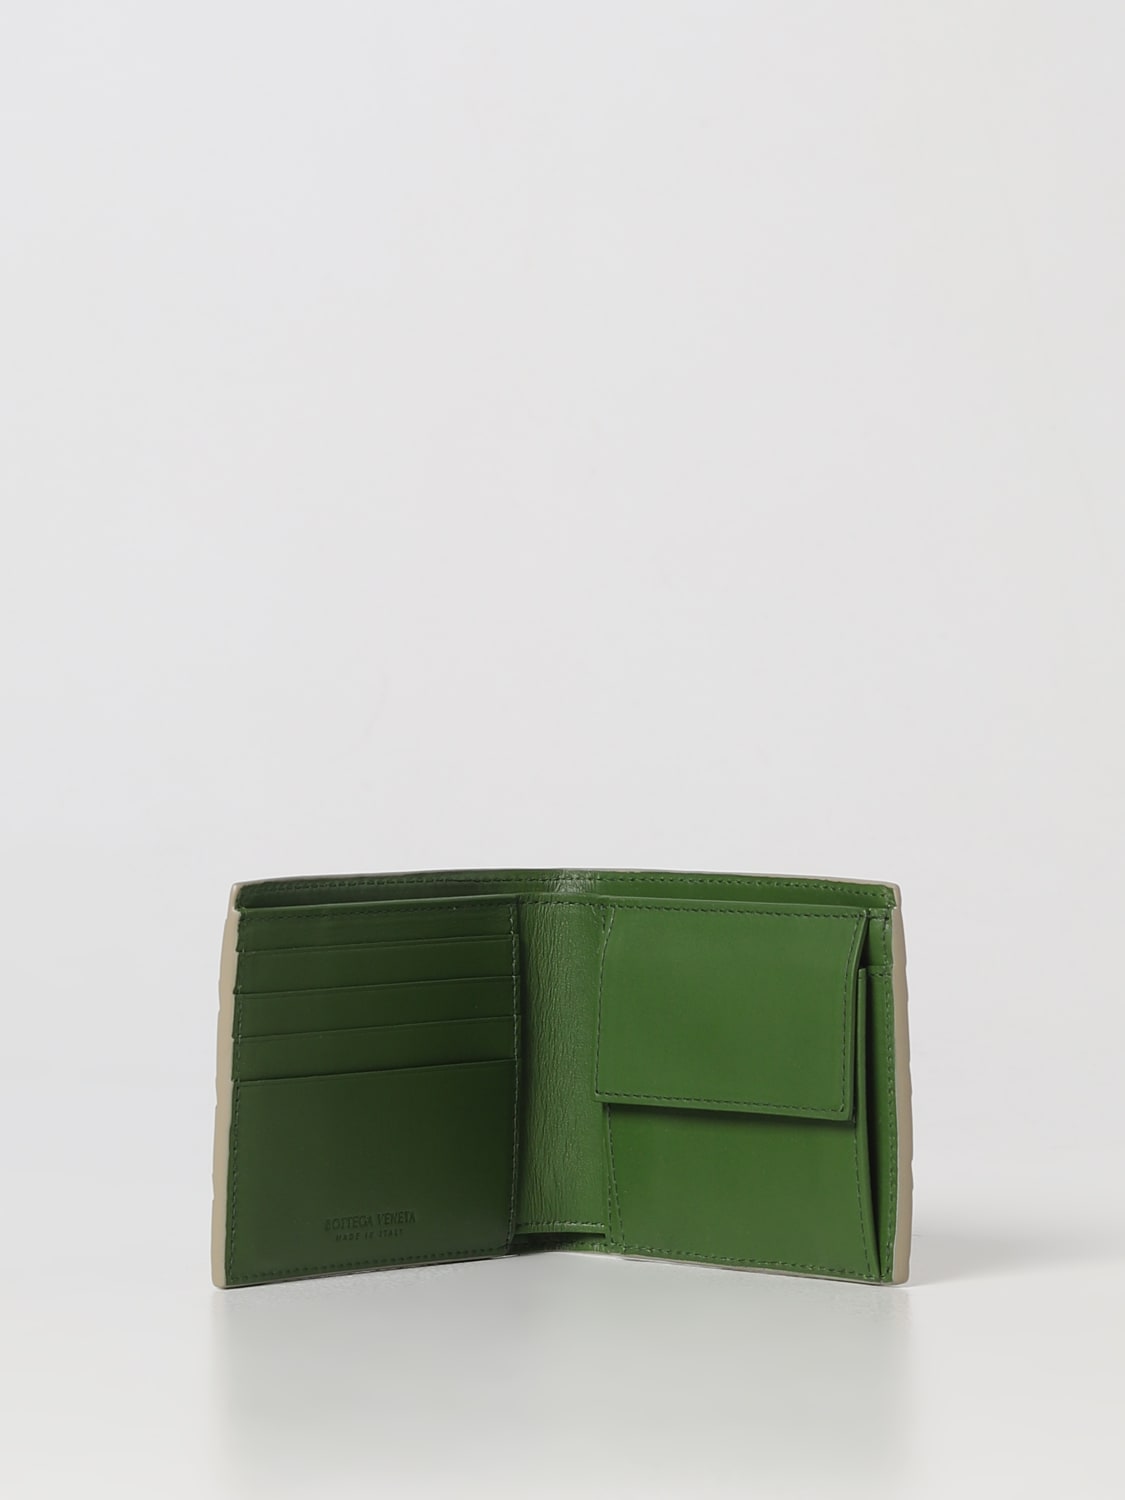 BOTTEGA VENETA: wallet for man - Beige | Bottega Veneta wallet